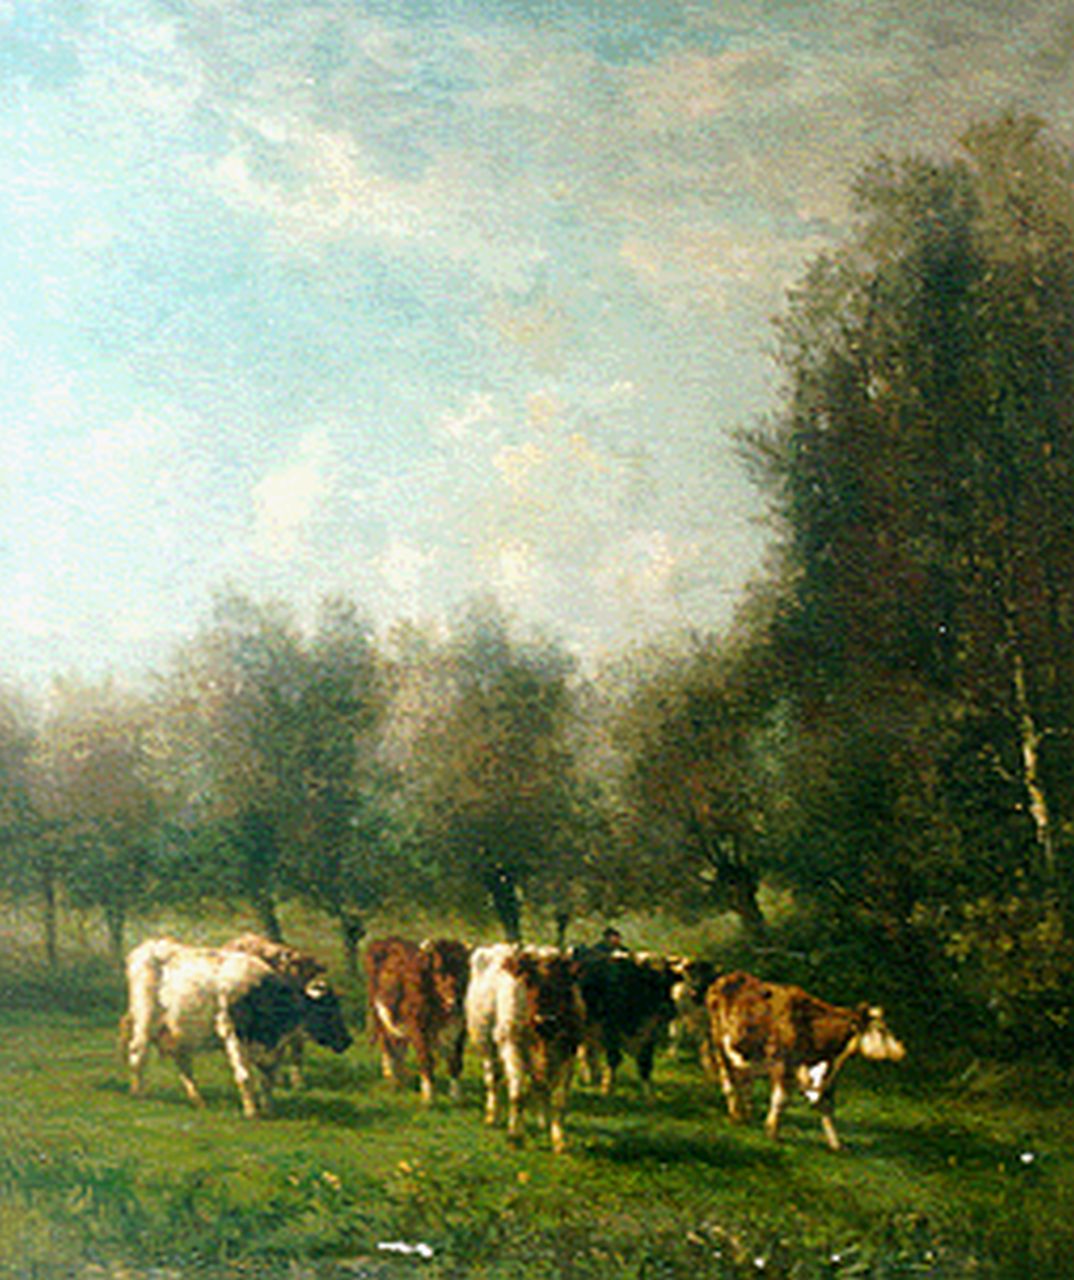 Vrolijk J.M.  | Johannes Martinus 'Jan' Vrolijk, Weidelandschap met koeien onder de bomen, olieverf op doek 120,0 x 100,2 cm, gesigneerd linksonder